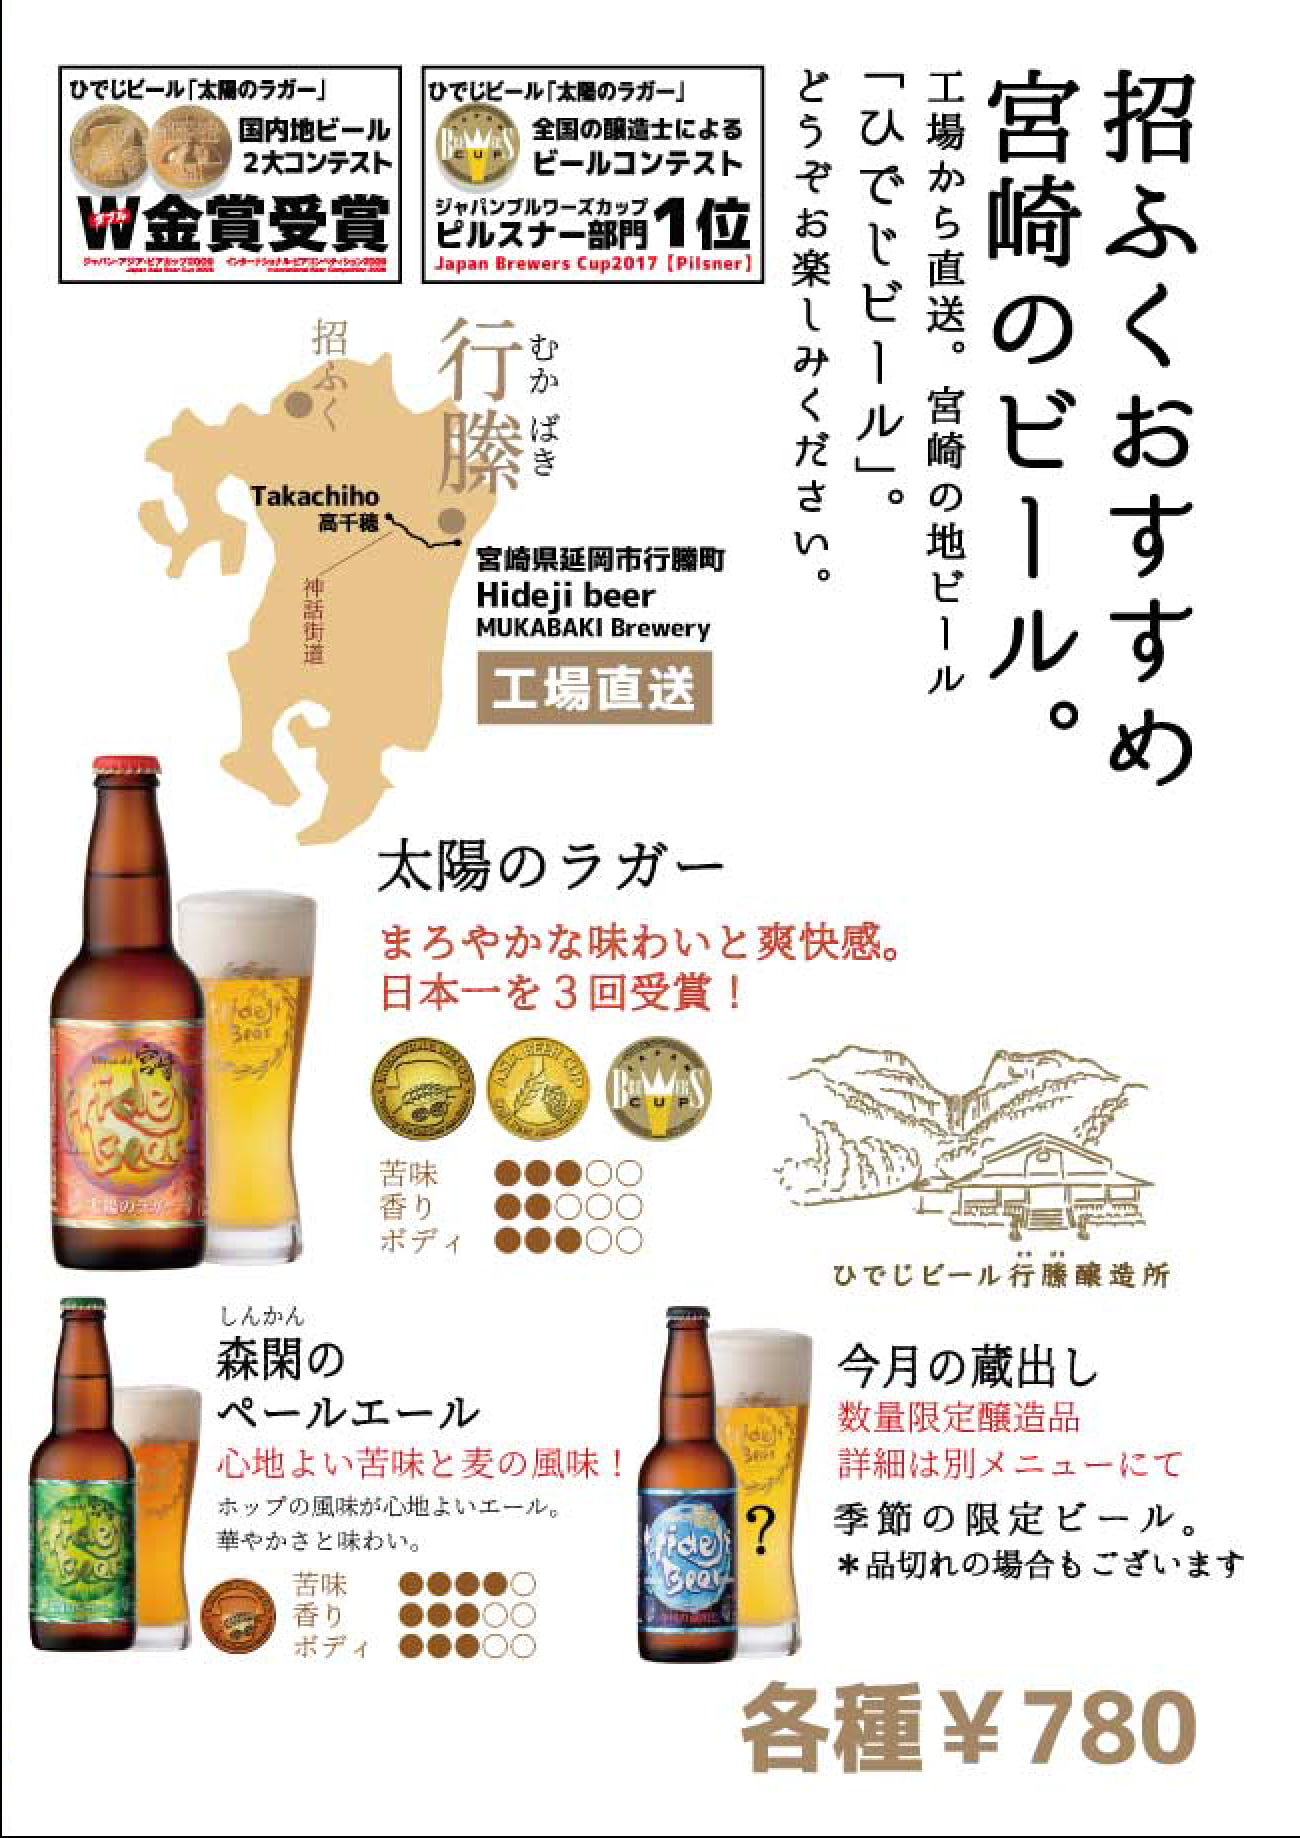 宮崎ひでじビール